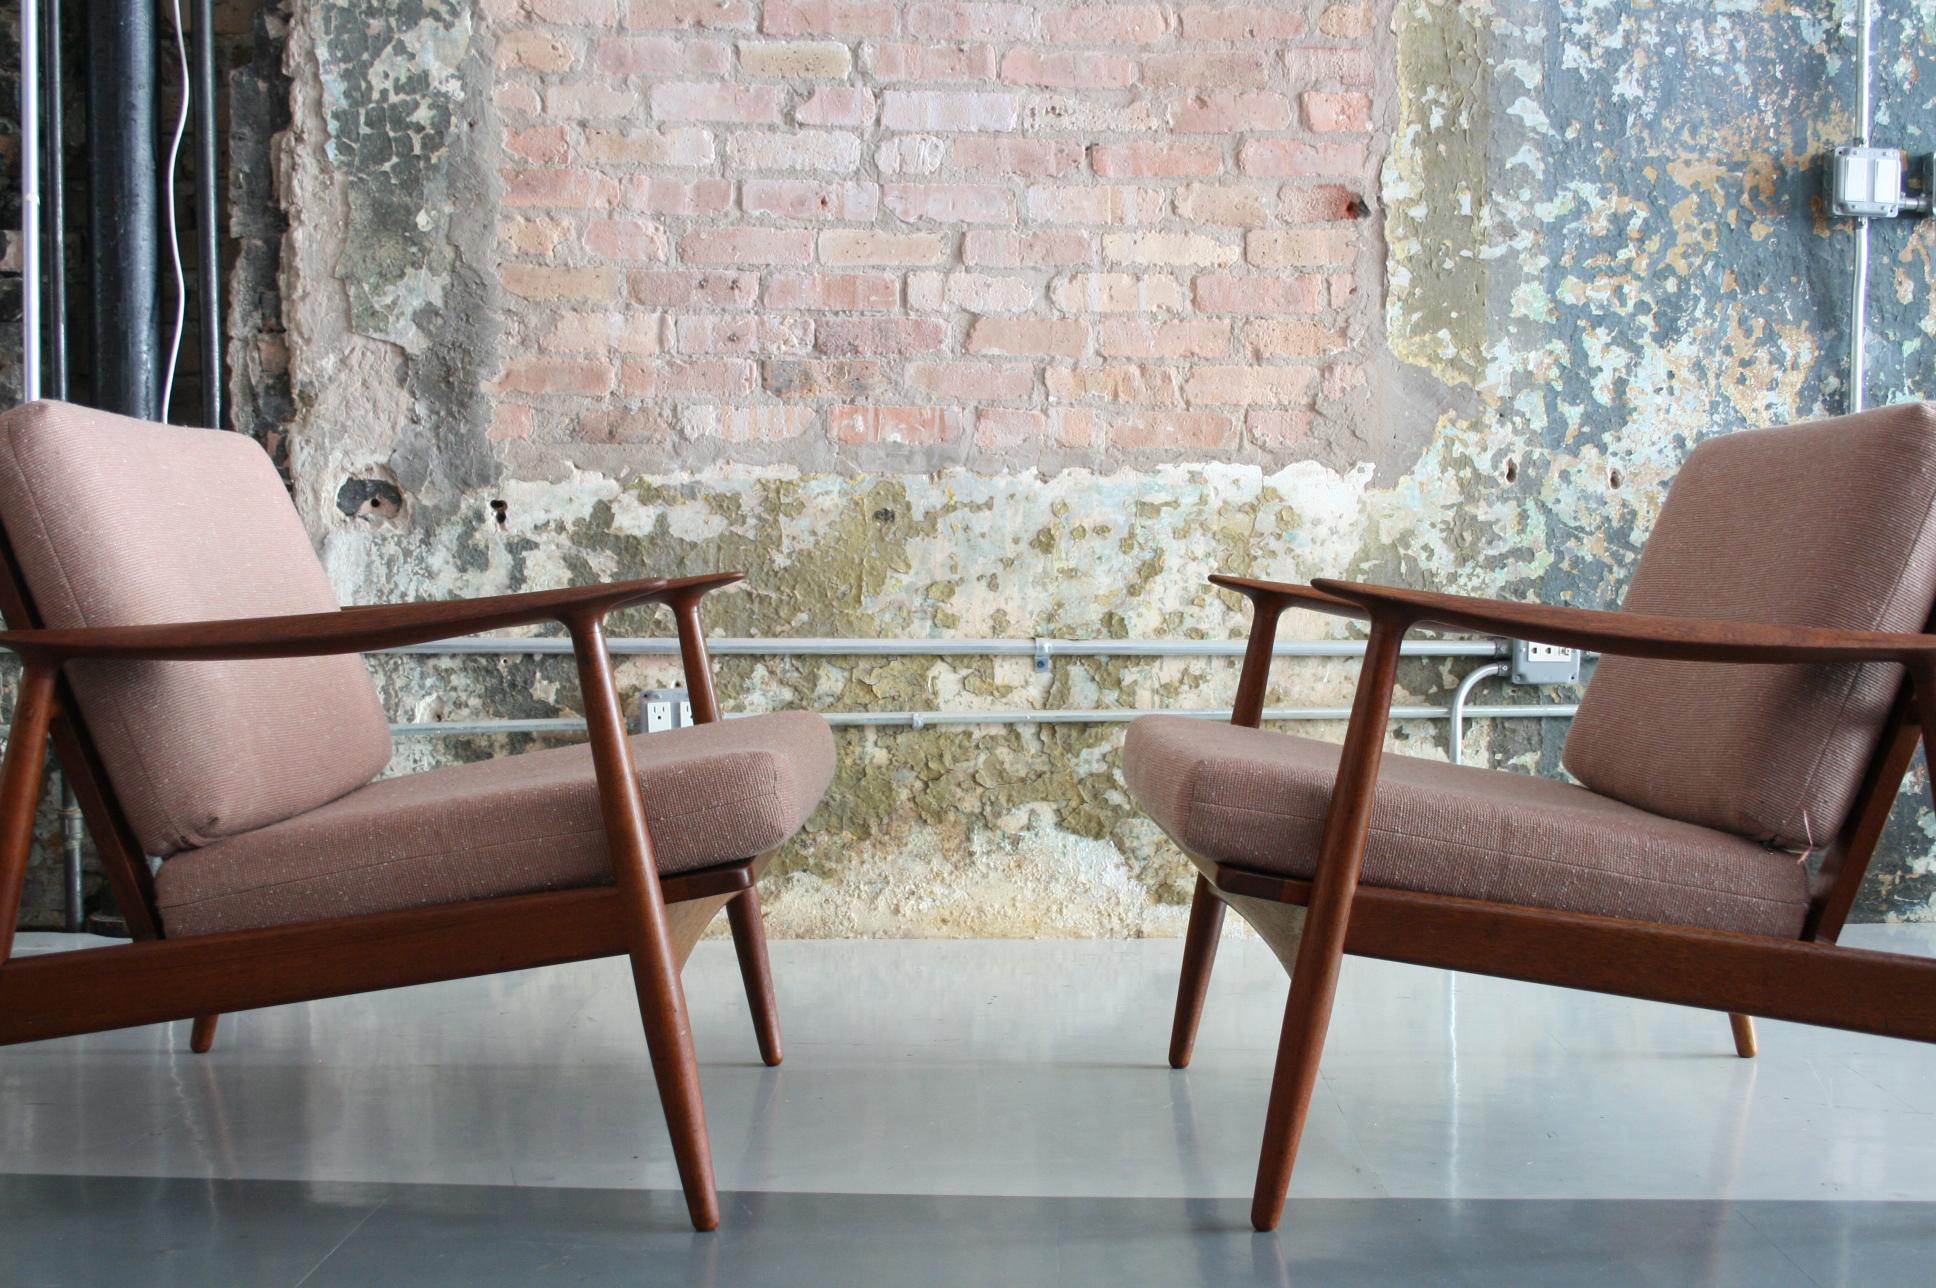 Upholstery Pair of Teak Danish Modern Lounge Chairs by Moreddi Denmark